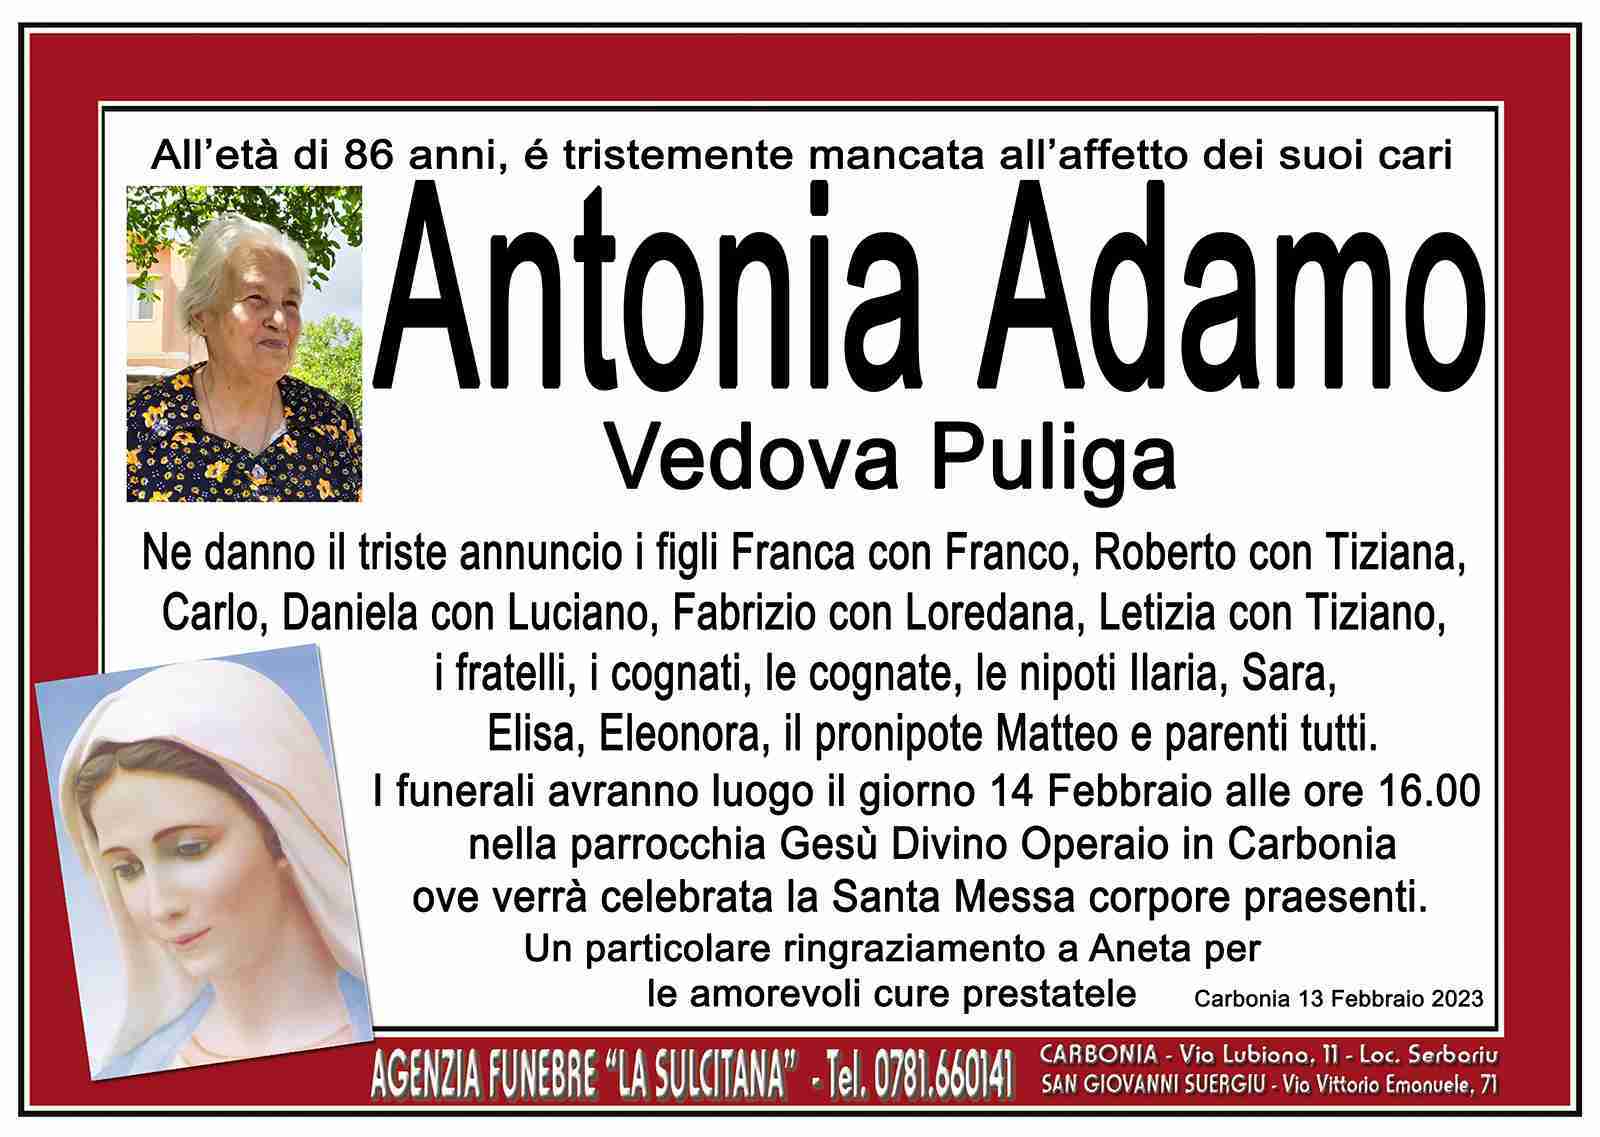 Antonia Adamo